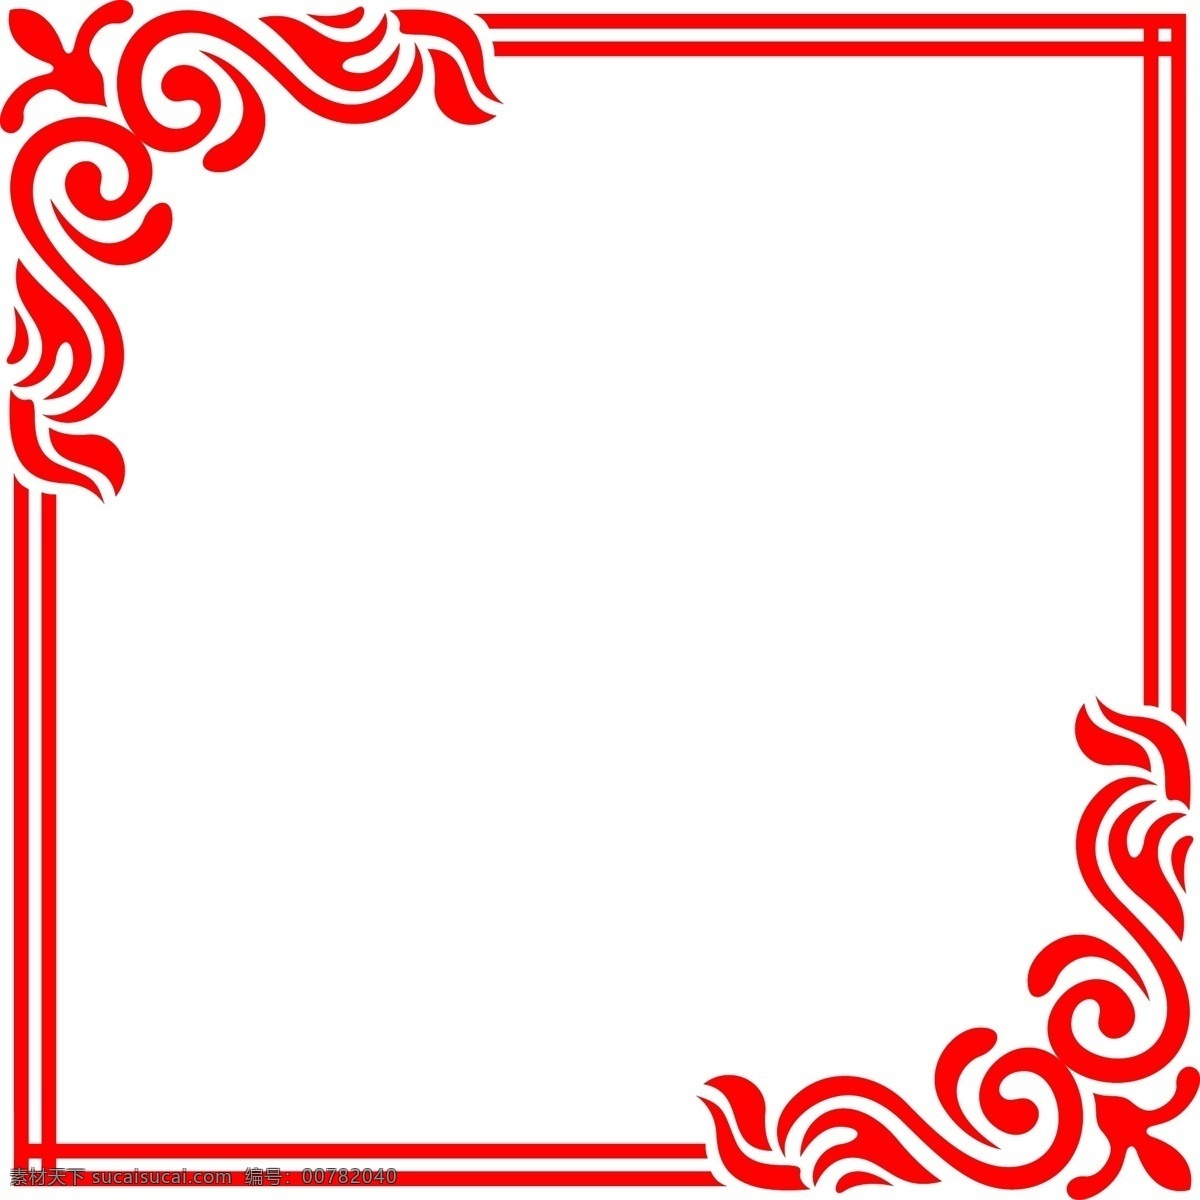 矢量 欧式 红色 正方形 海报 边框 彩色 装饰 平面设计 原创 透明底 免抠 节日 海报装饰 清新 通用 标题框 海报边框